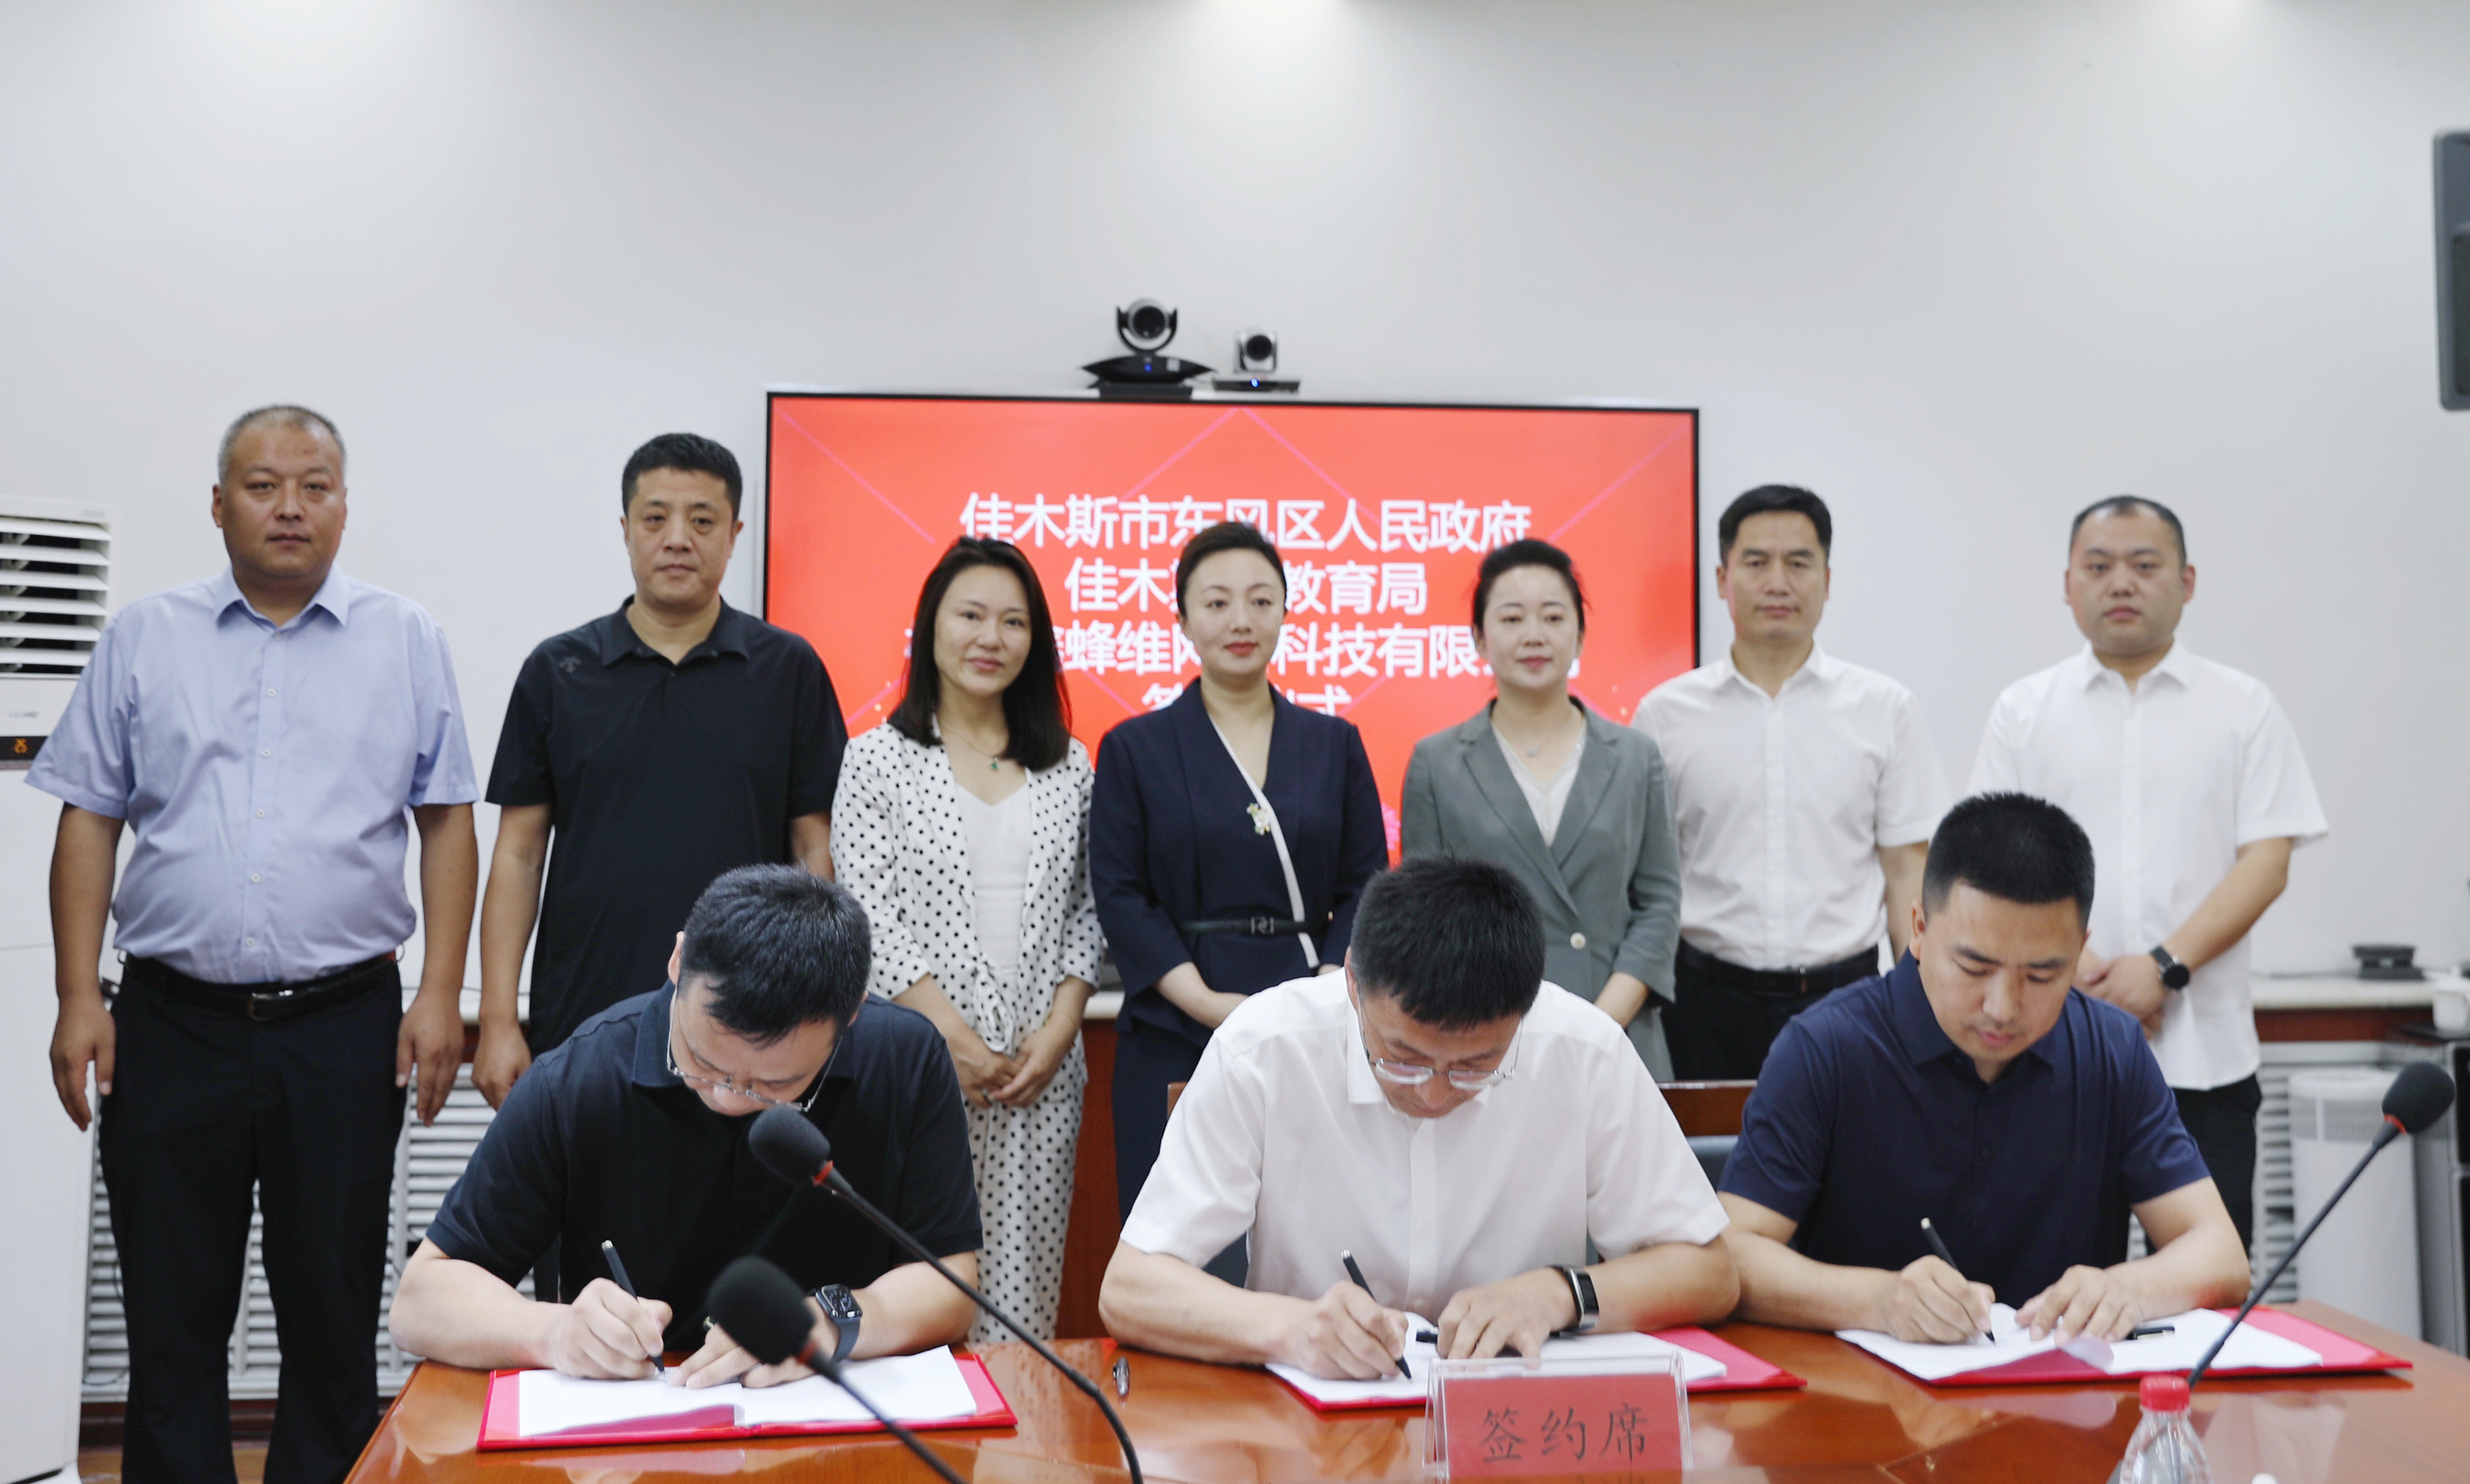 东风区人民政府、佳木斯市教育局与鑫蜂维数字化运营中心项目正式签约